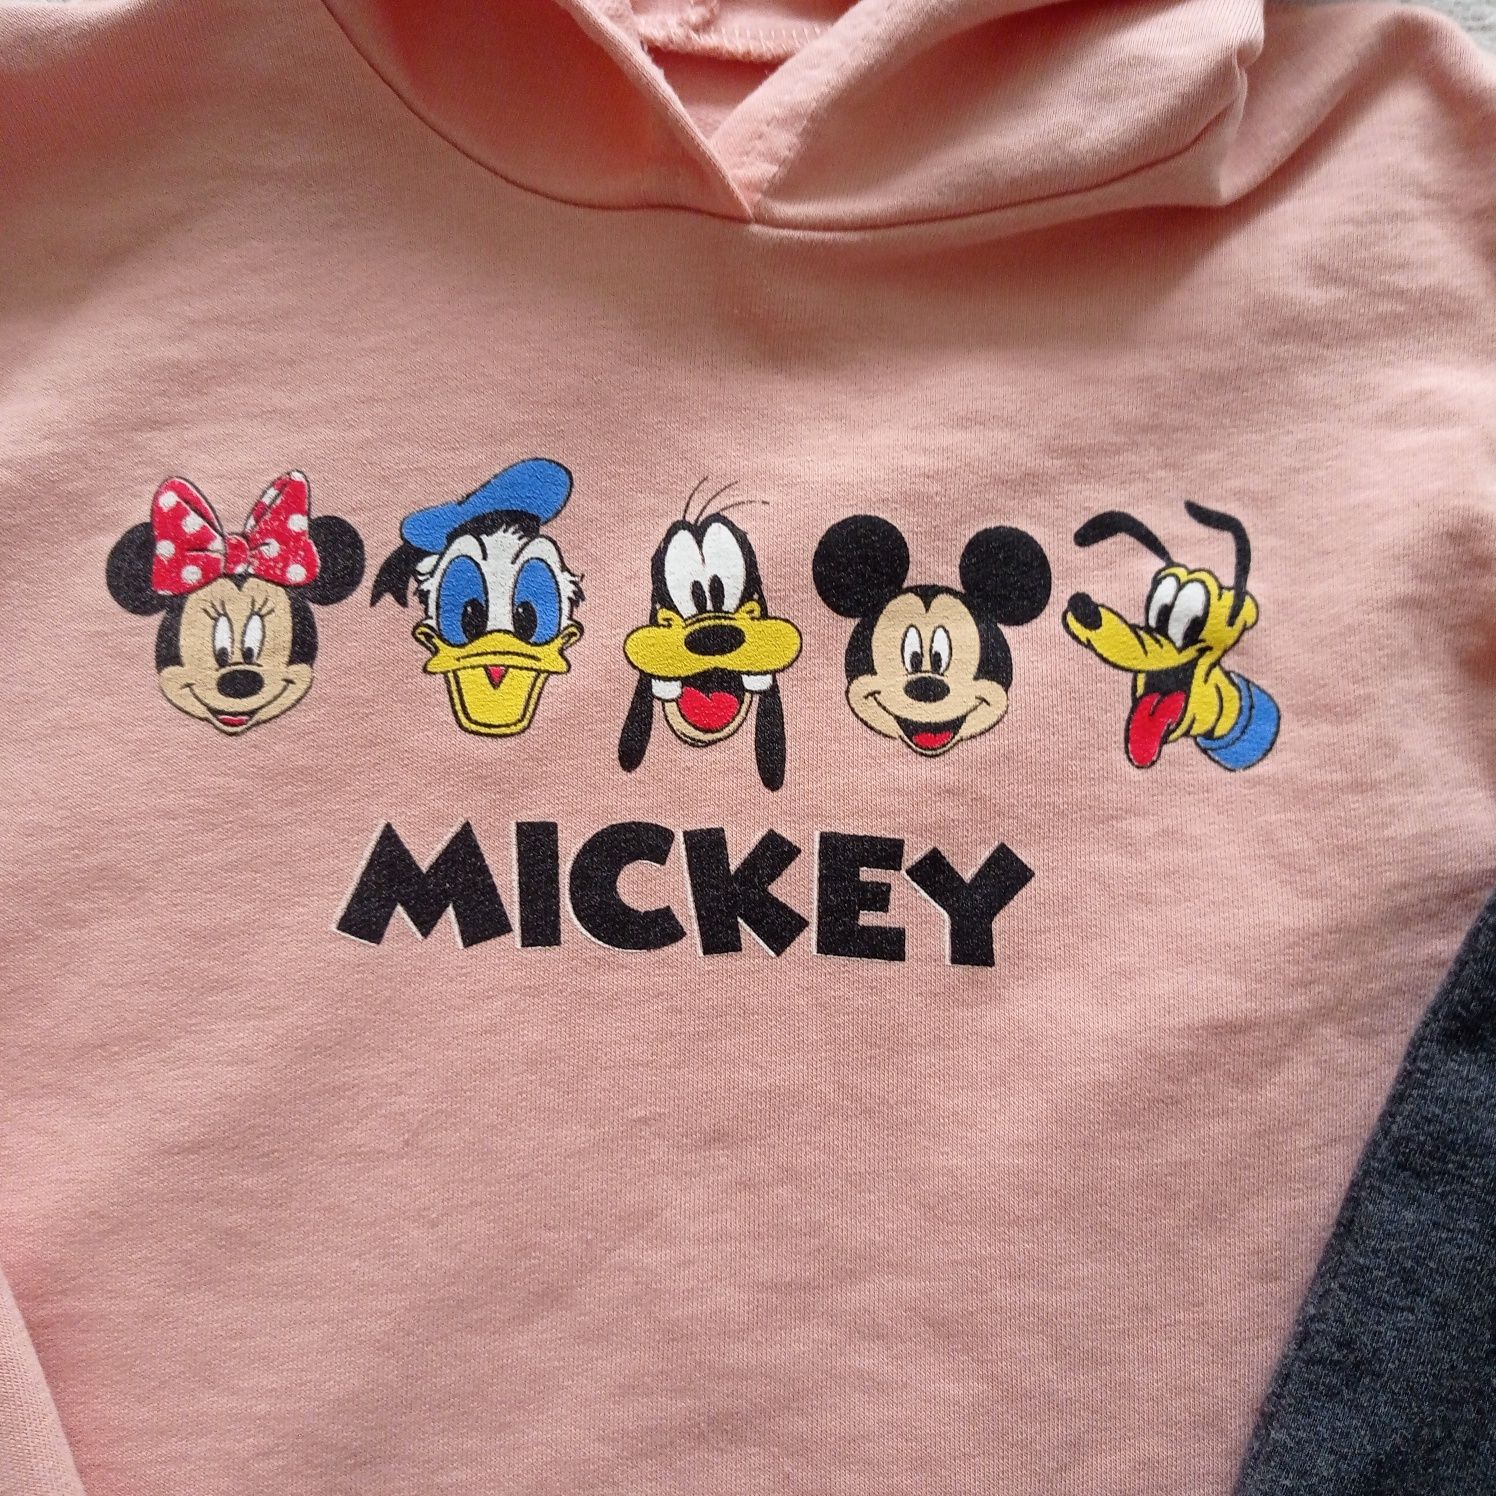 Komplet dla dziewczynki 98 Next leginsy, bluza Mickey